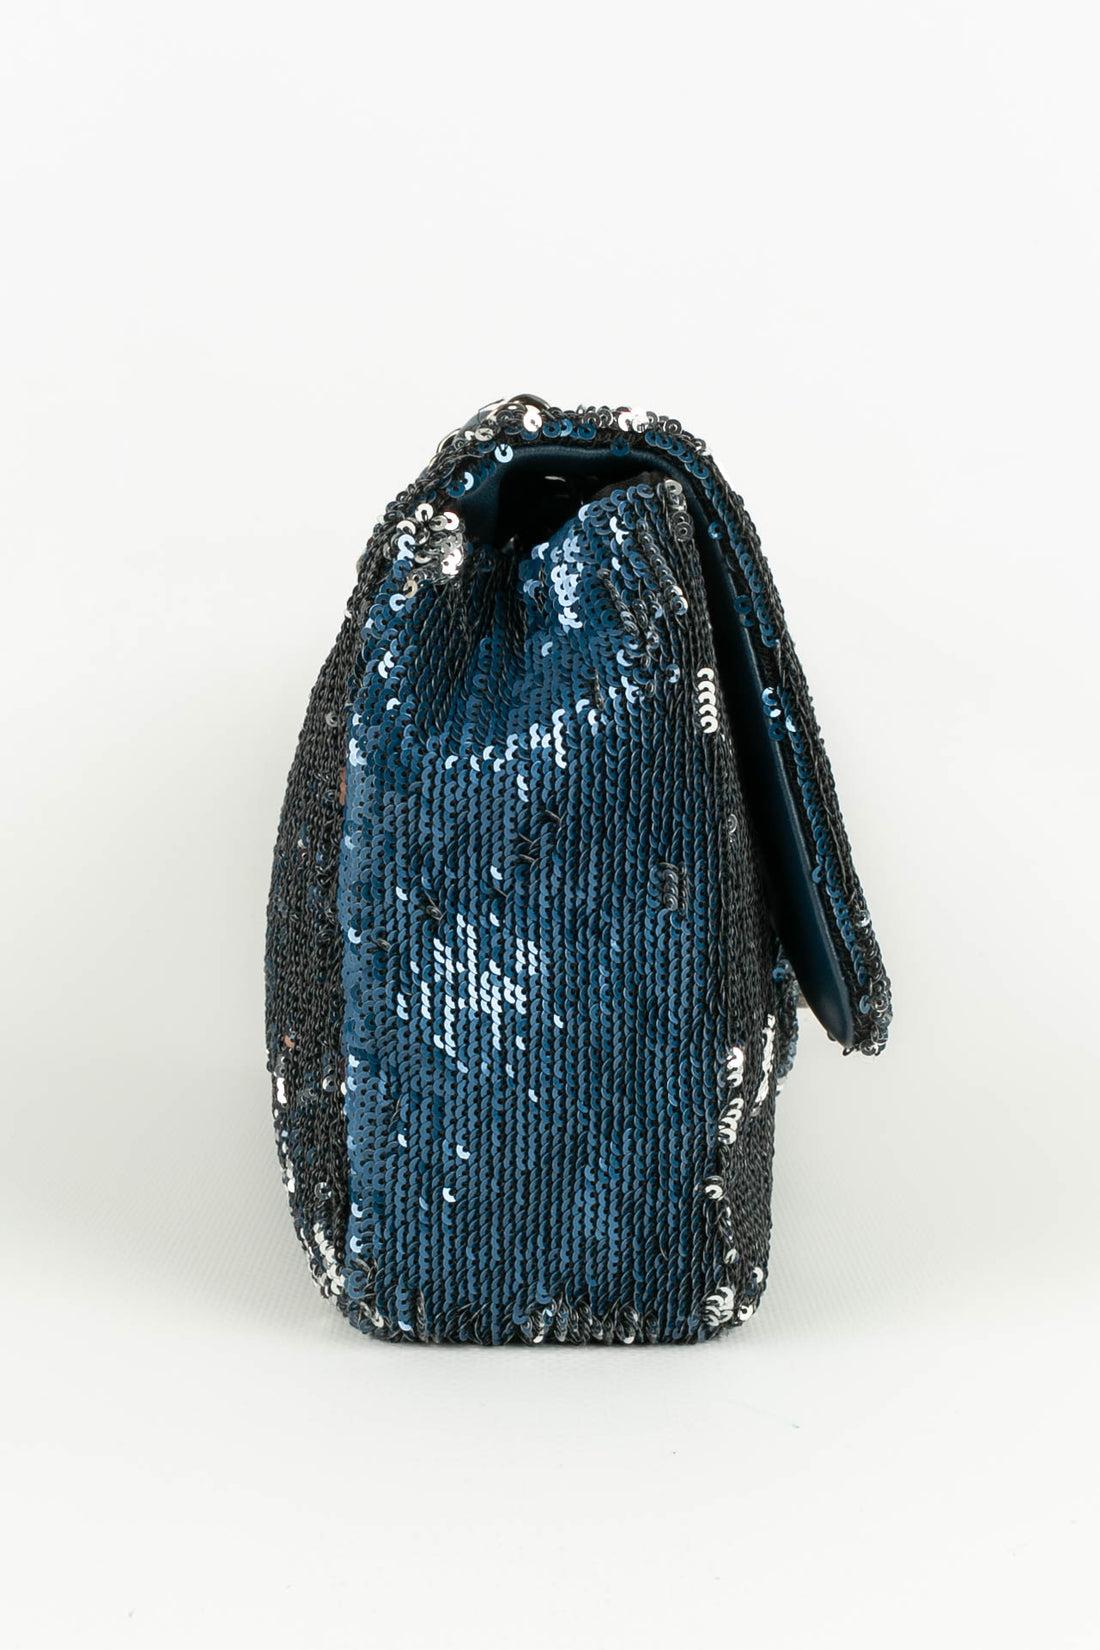 Women's Chanel Blue Leather Bag Paris-Cuba, 2017 For Sale